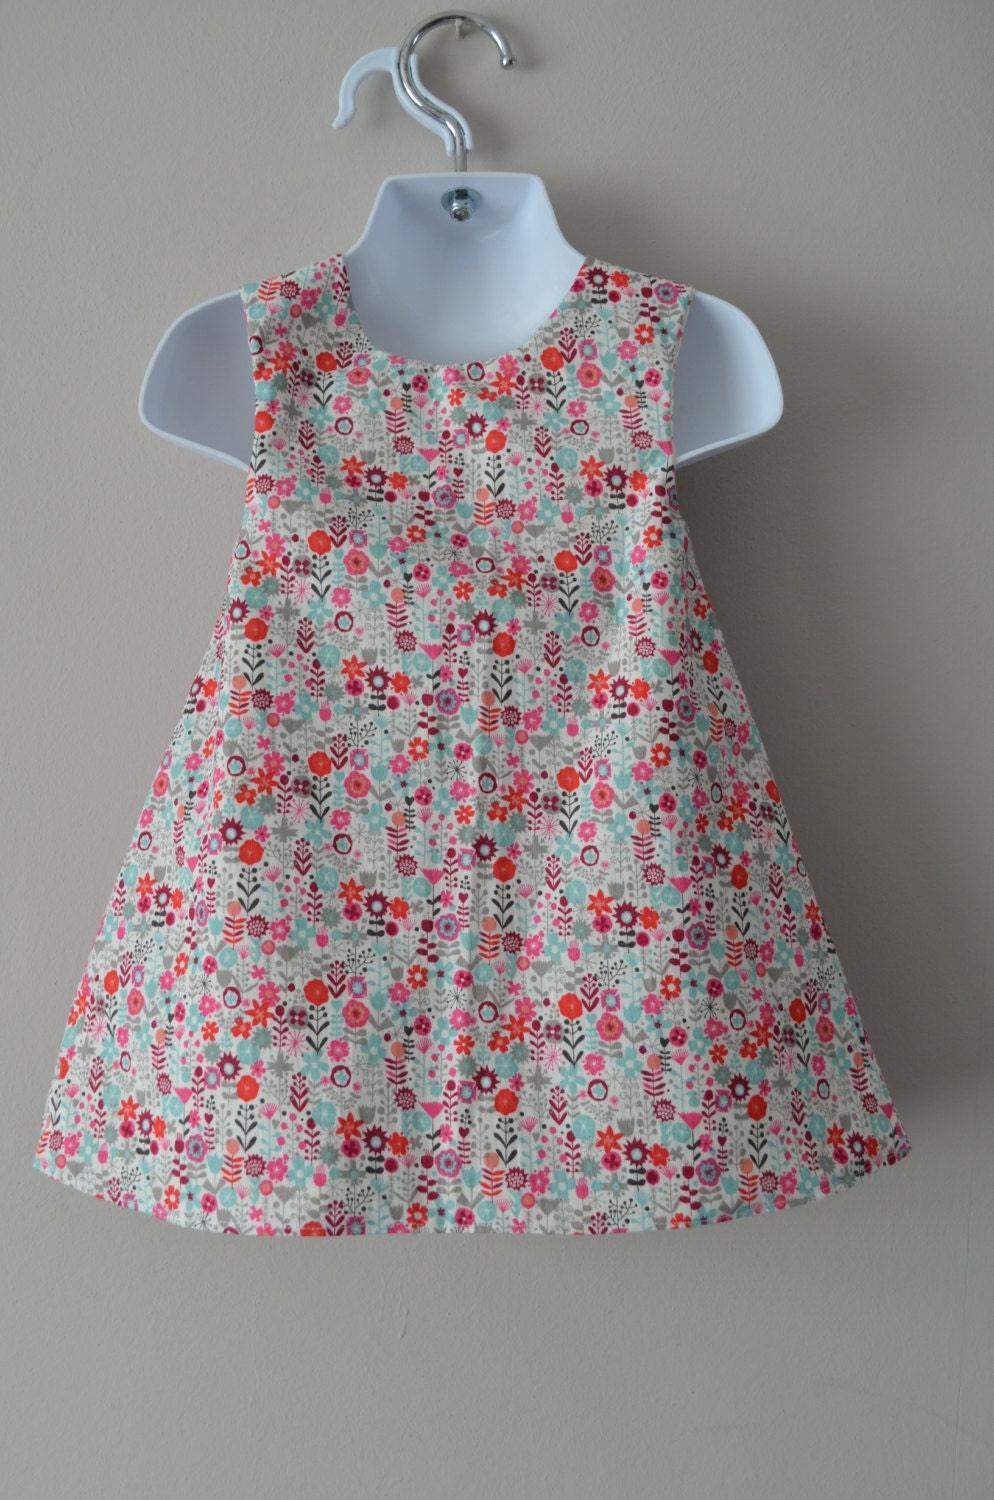 Toddler Girl's Dress Toddler Dress Child's Dress | Etsy